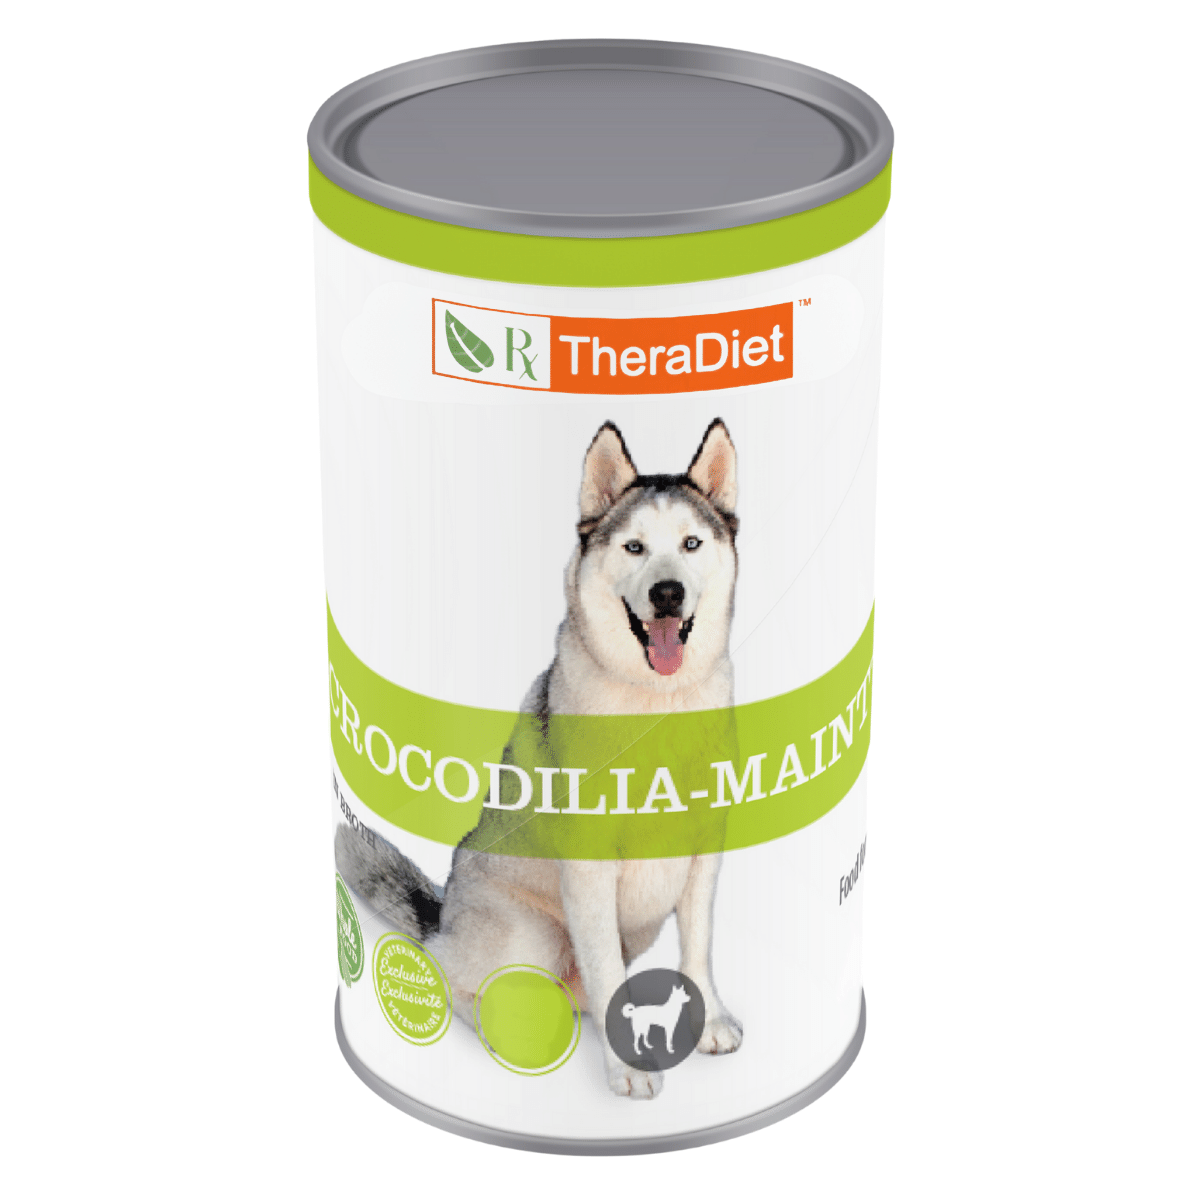 Crocodilia-MAINT Canned Paté Dog Food